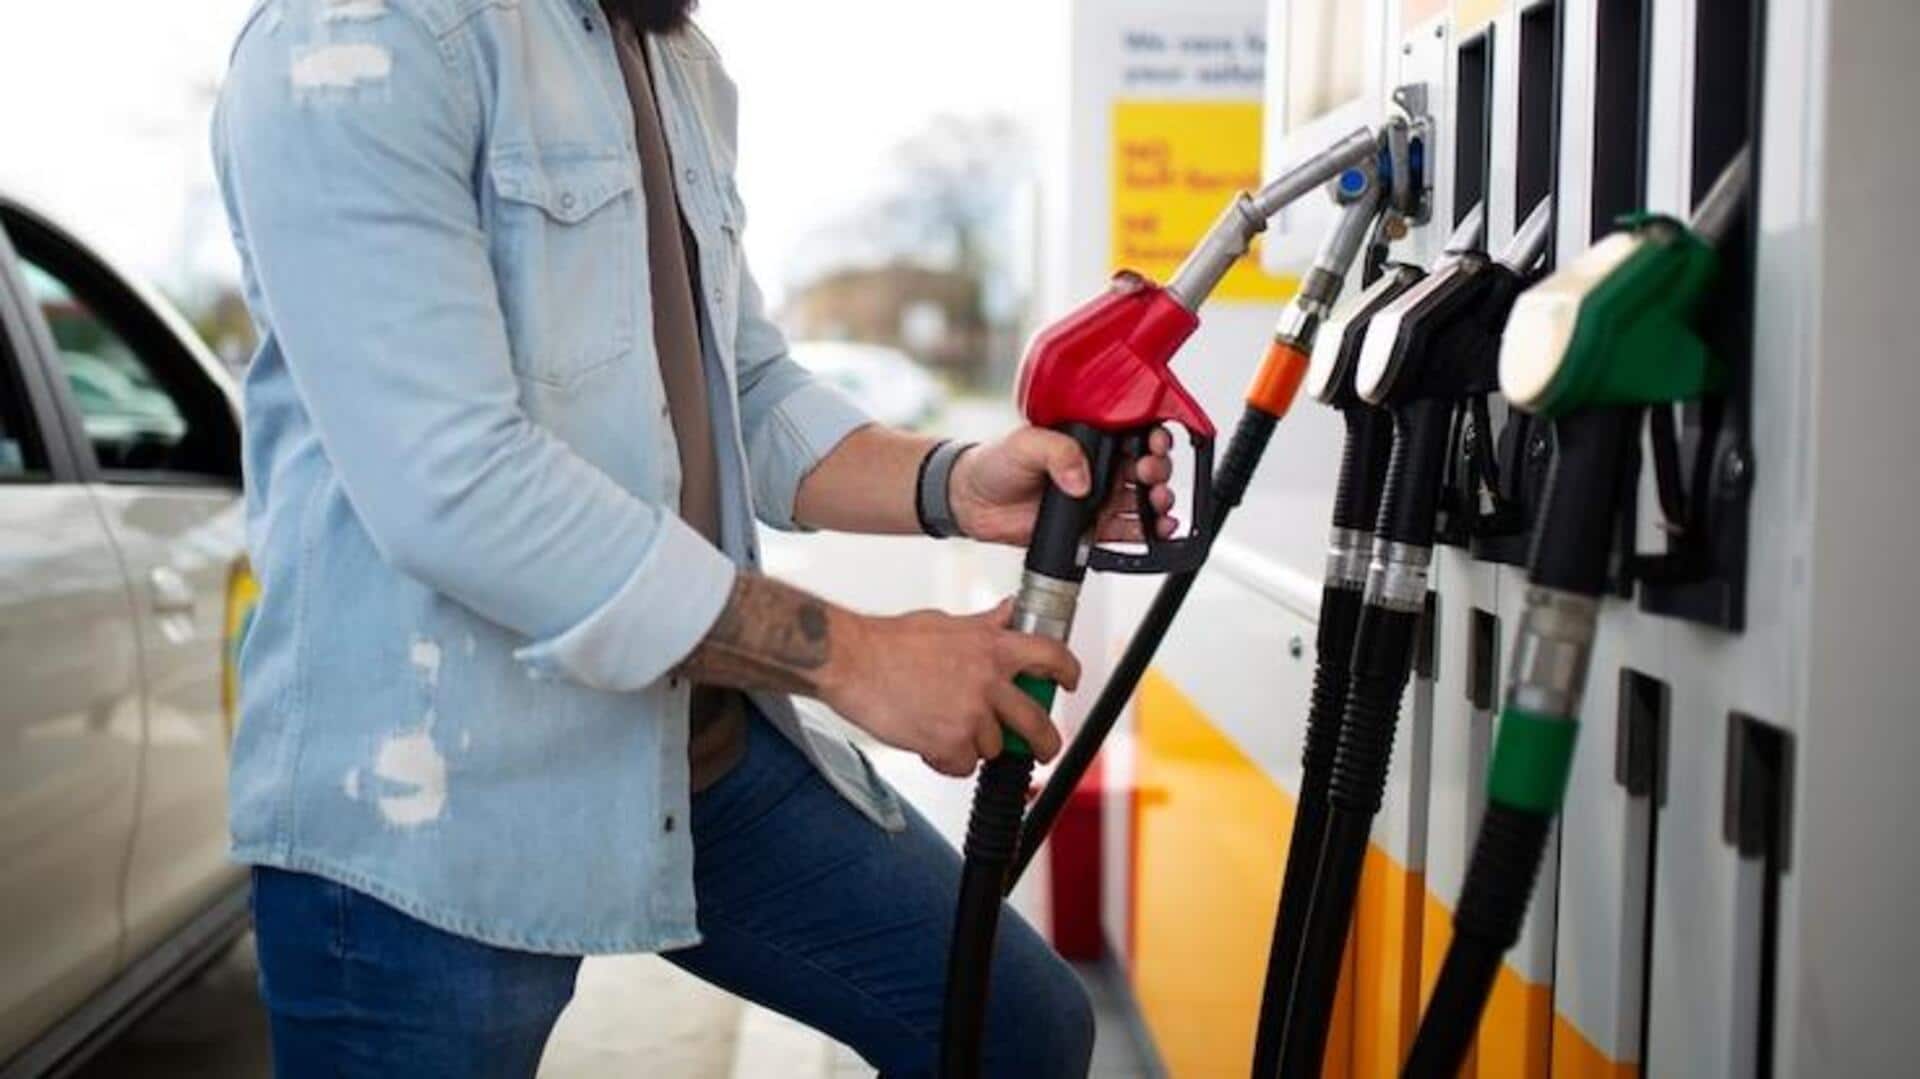 पेट्रोल-डीजल के दाम: 7 दिसंबर के लिए जारी हुई नई कीमत, जानिए कितना हुआ उतार-चढ़ाव 